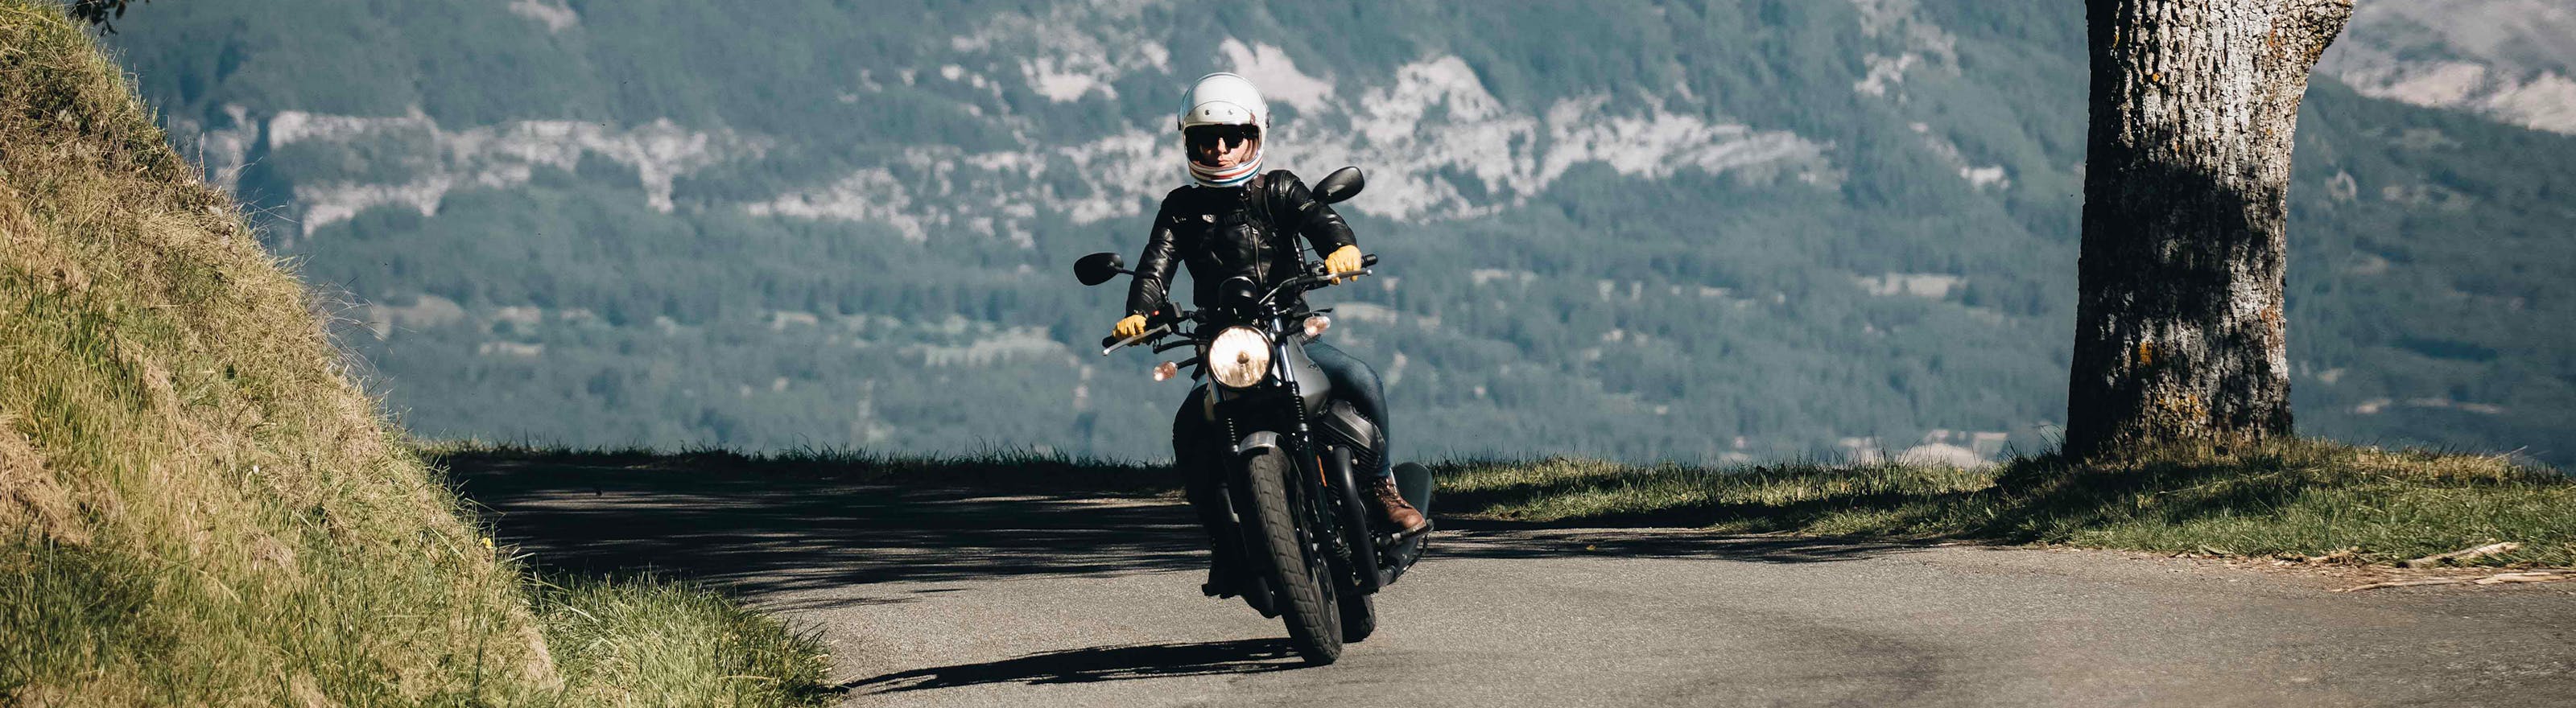 Moto sur la route en montagne